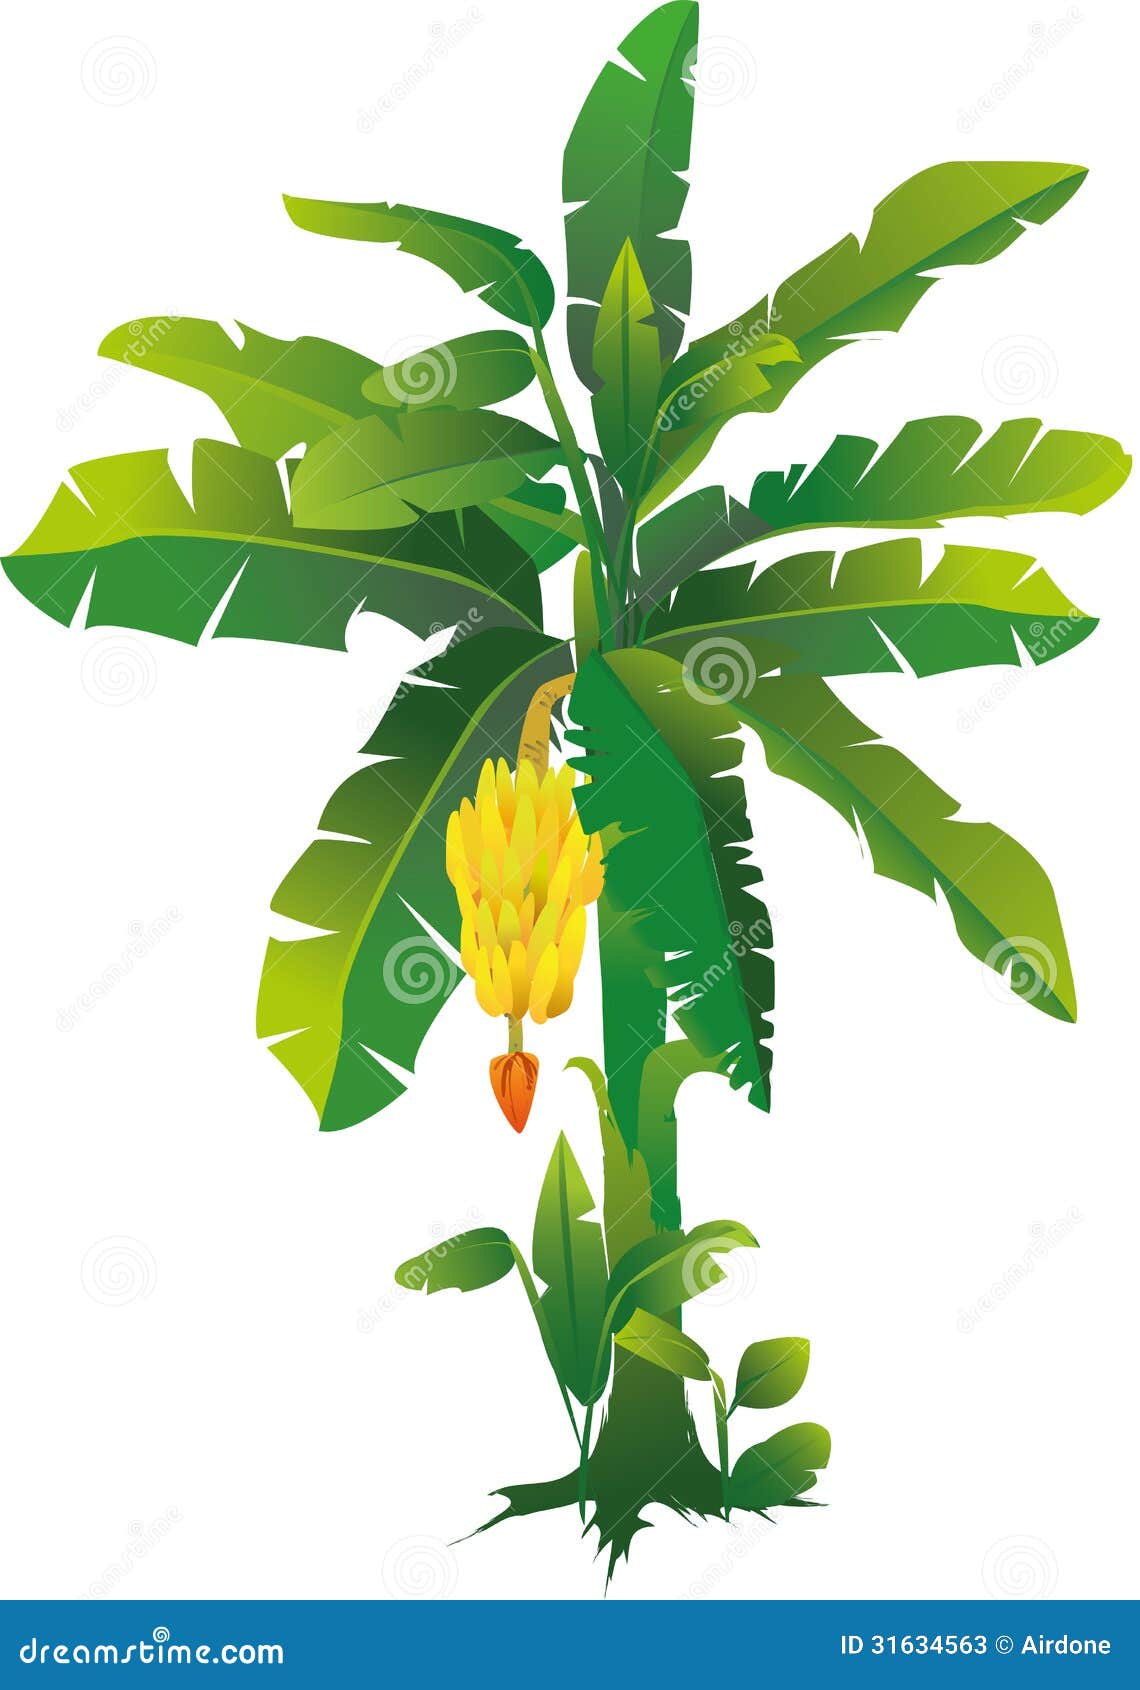 banana tree clip art - photo #33